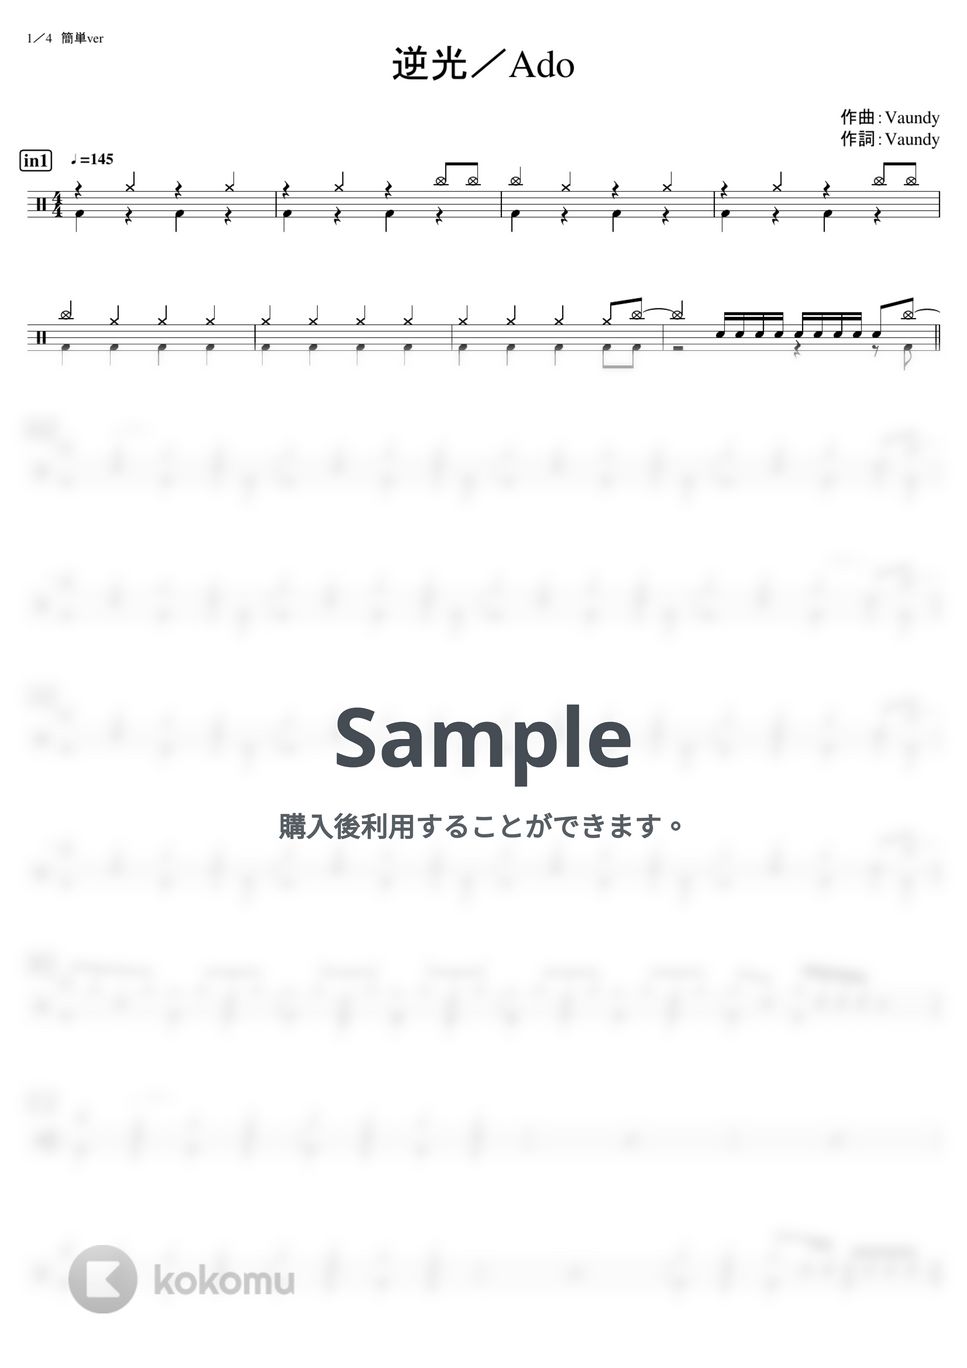 Ado (ウタfrom ONE PIECE) - 逆光 (初級) by kamishinjo-drum-school